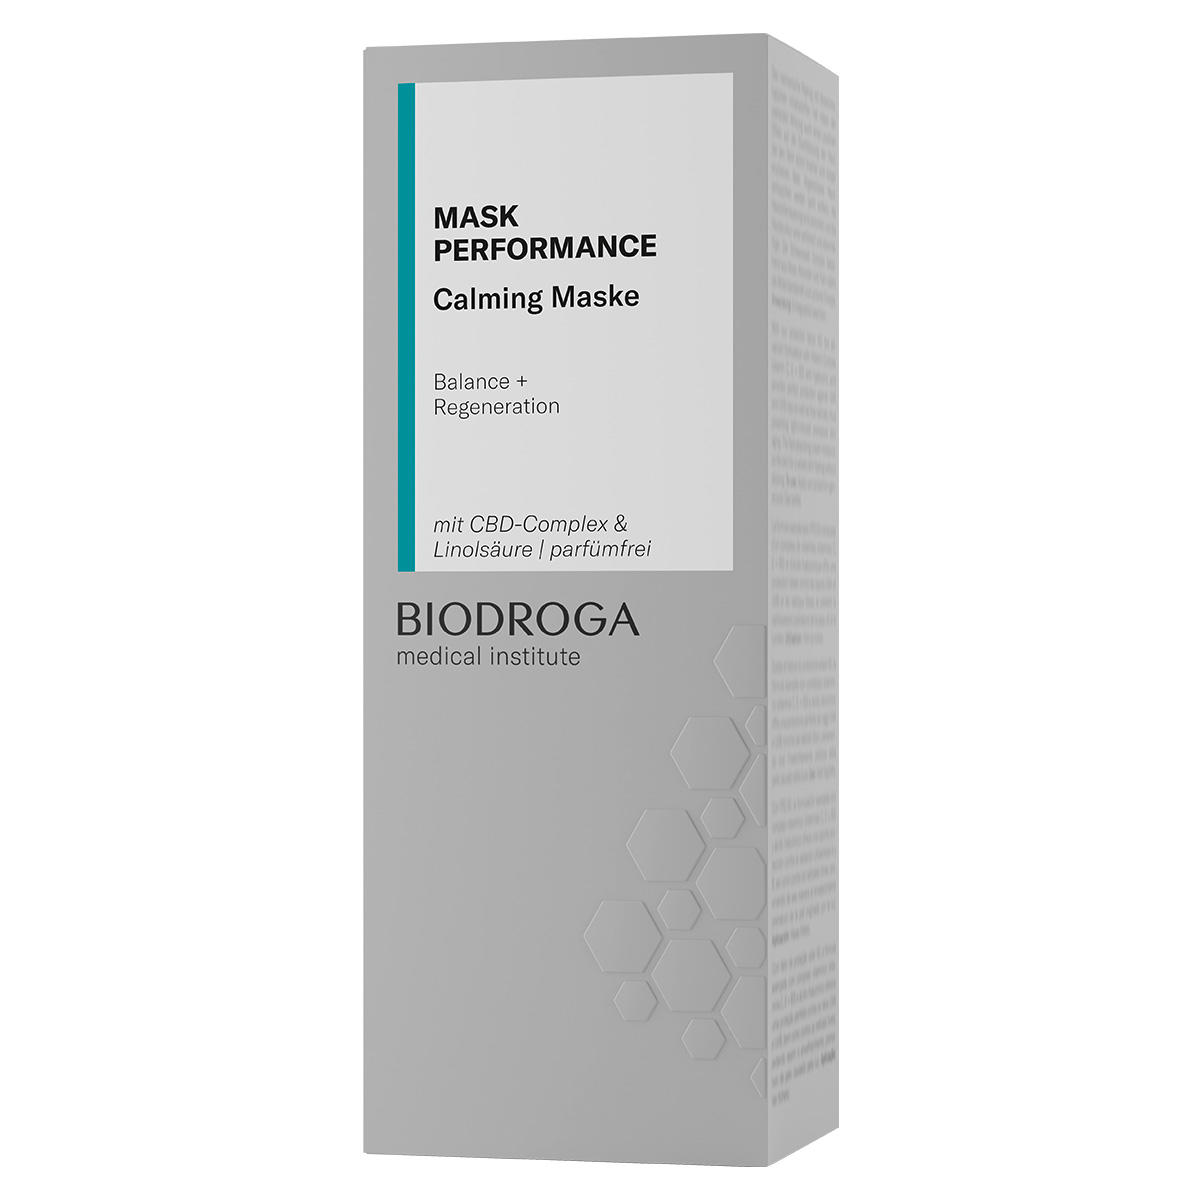 BIODROGA Medical Institute MASK PERFORMANCE Calming Masque 50 ml - 2